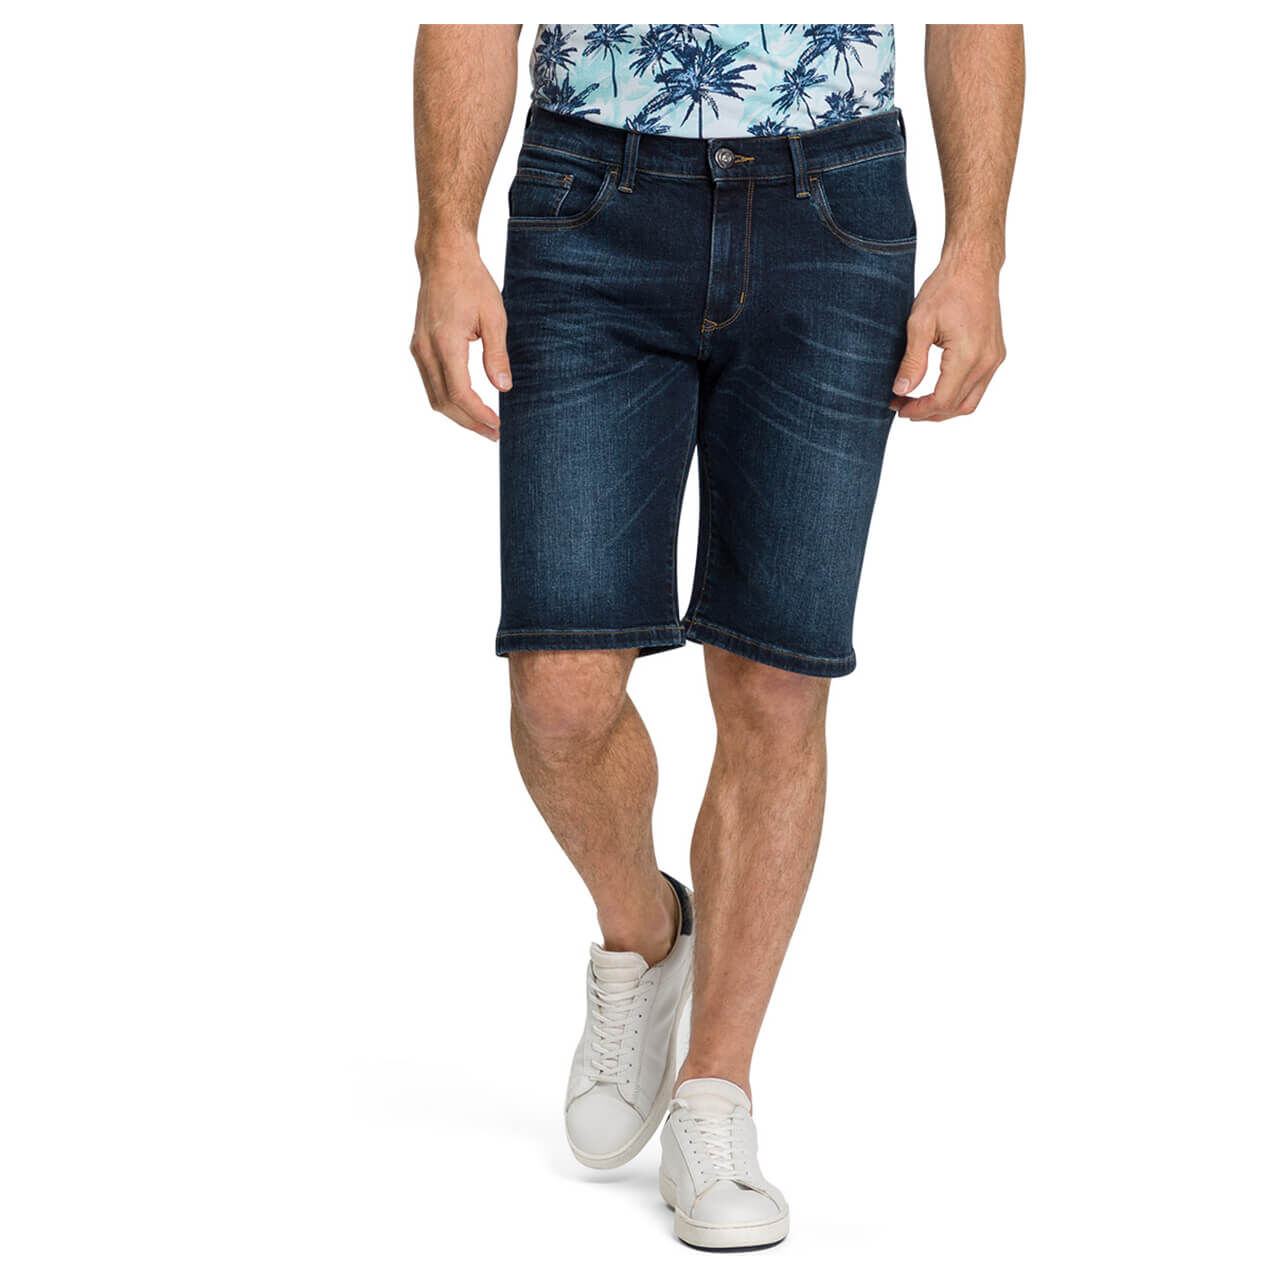 Pioneer Jeans Lenn Bermuda für Herren in Dunkelblau angewaschen, FarbNr.: 6816